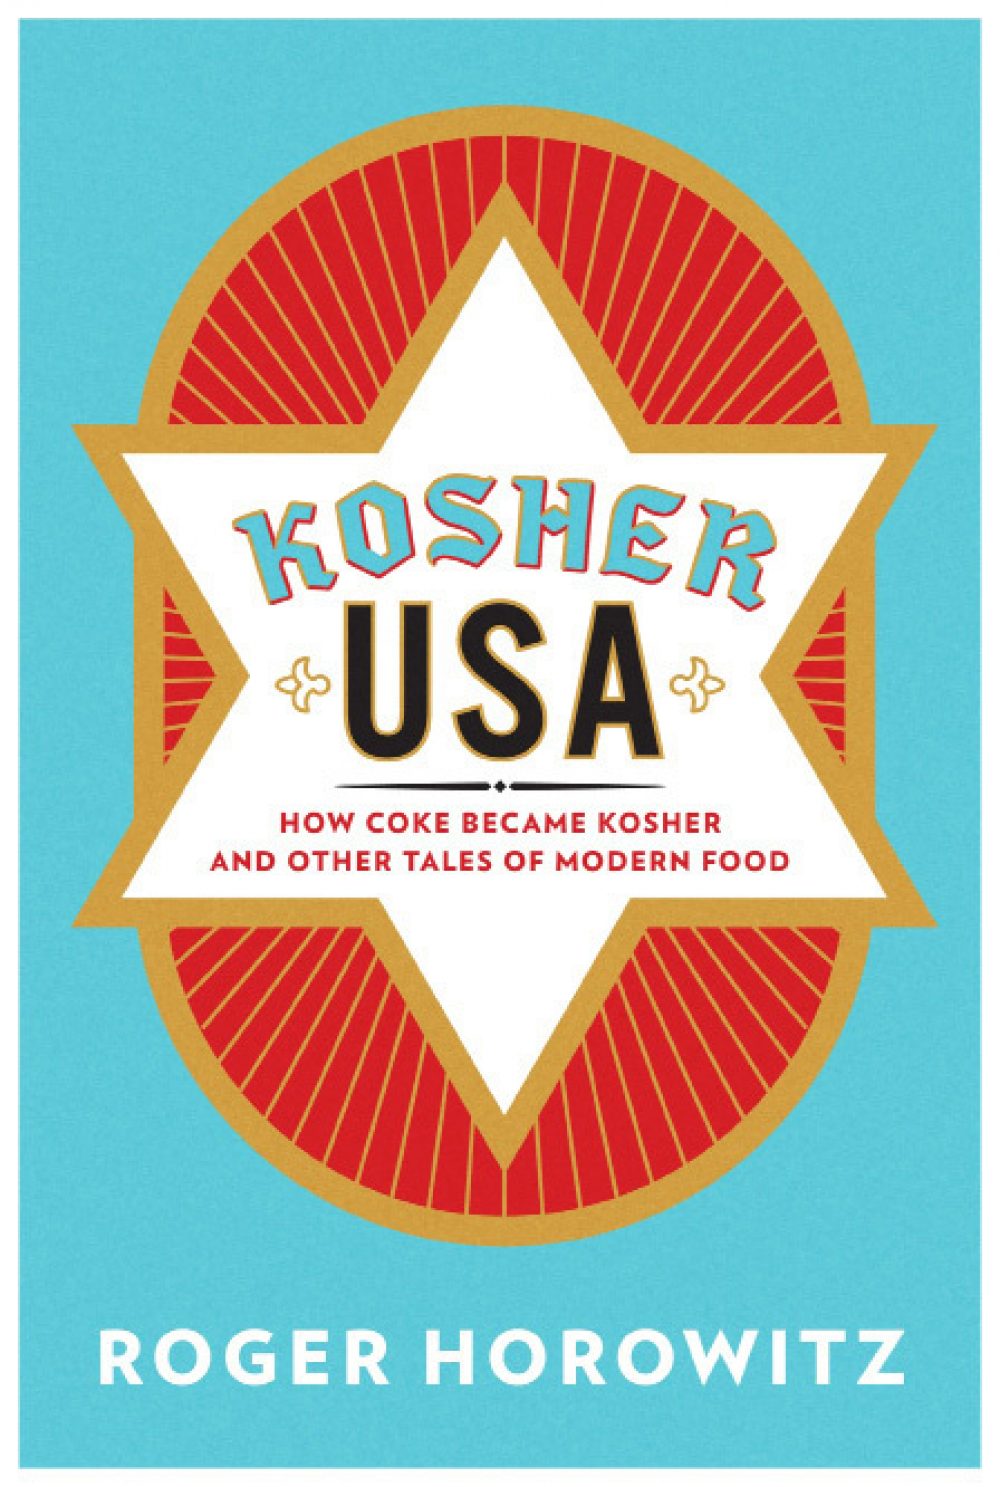 Book Reviews i45 Kosher USA